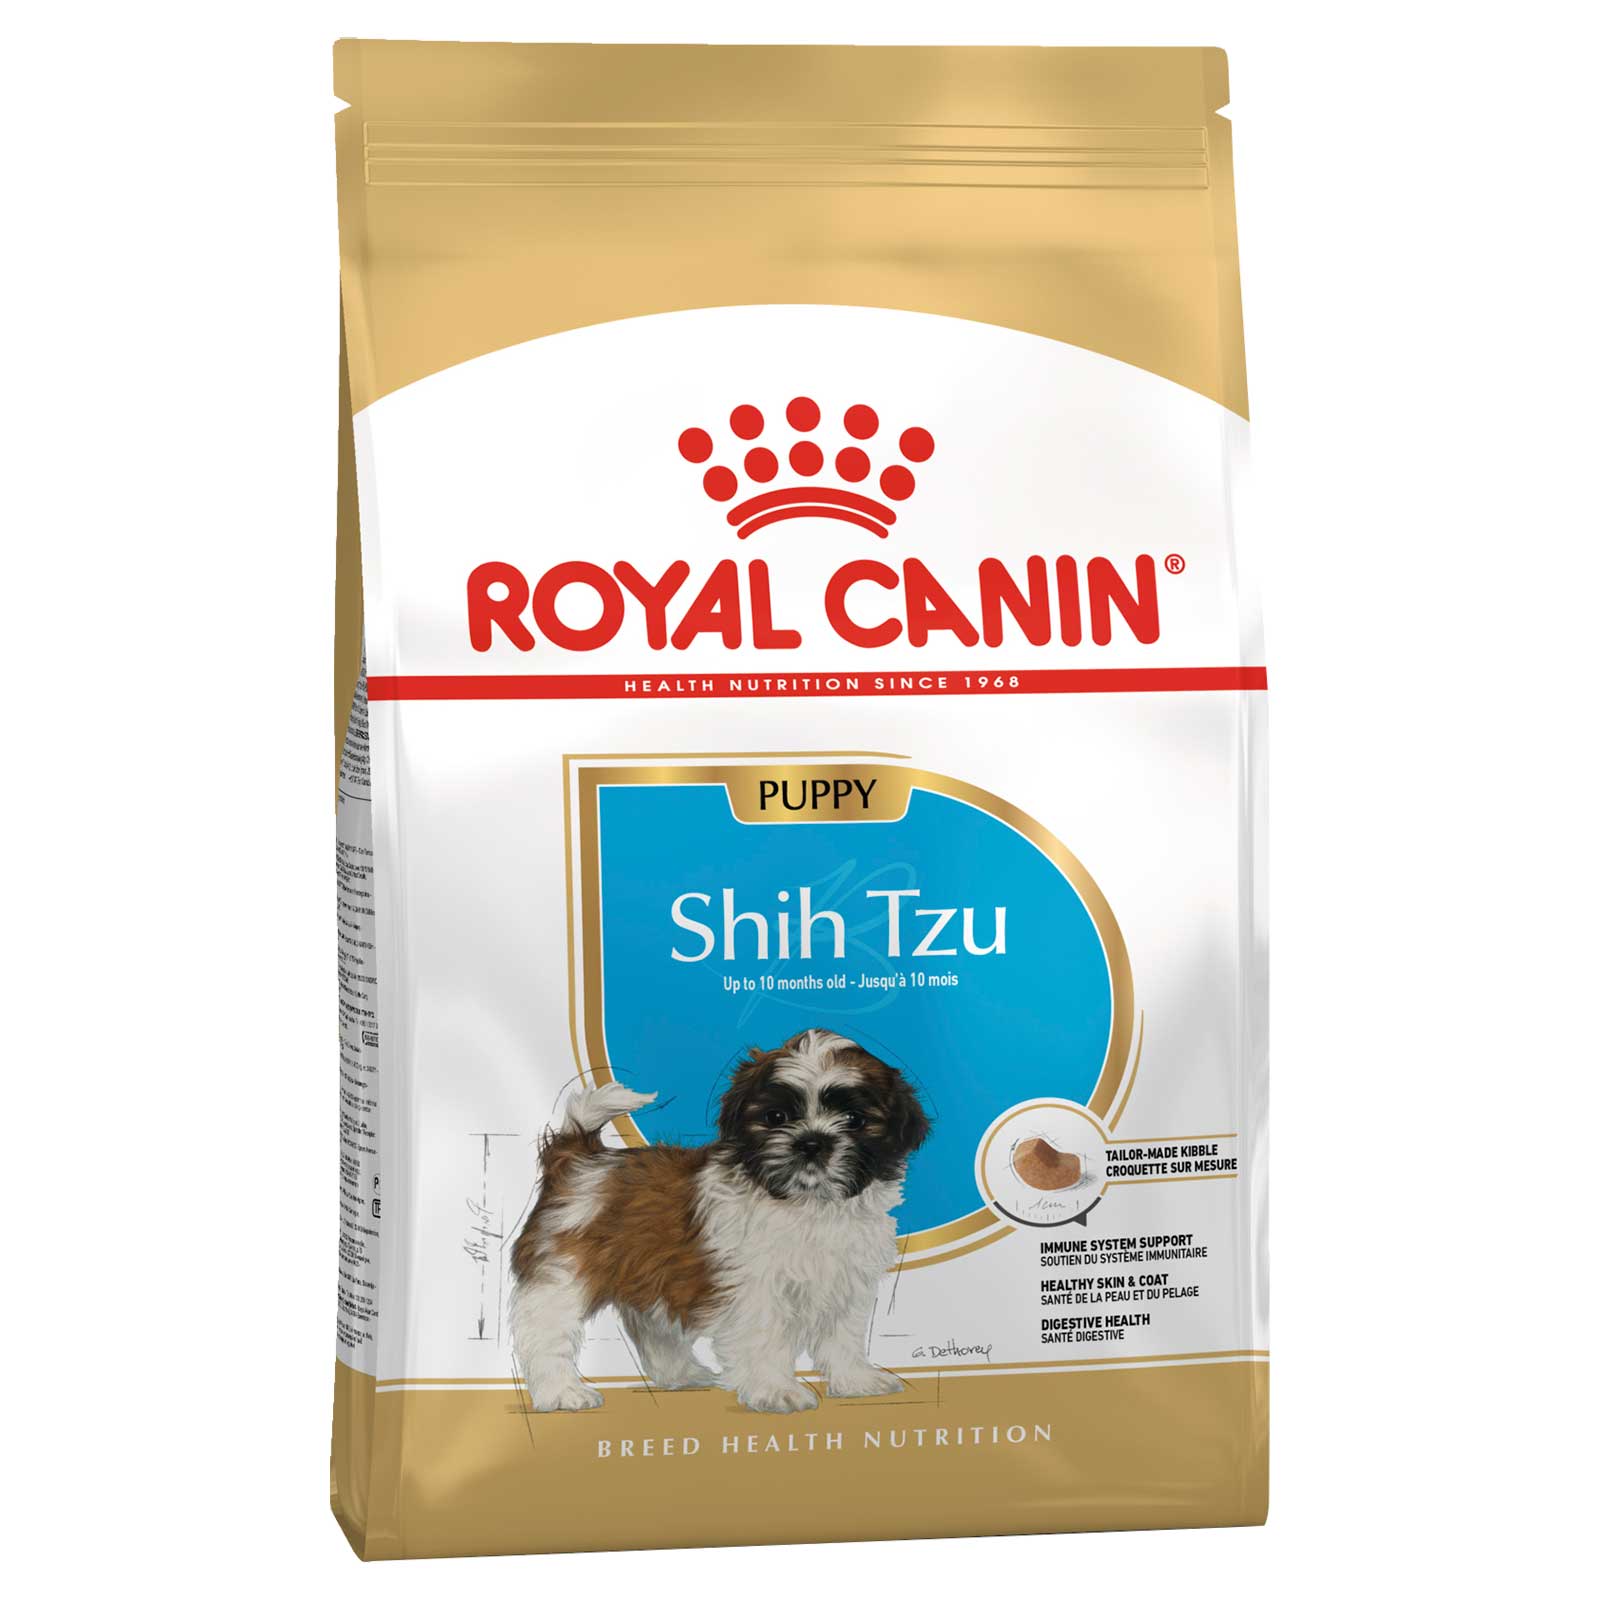 Royal Canin Dog Food Puppy Shih Tzu